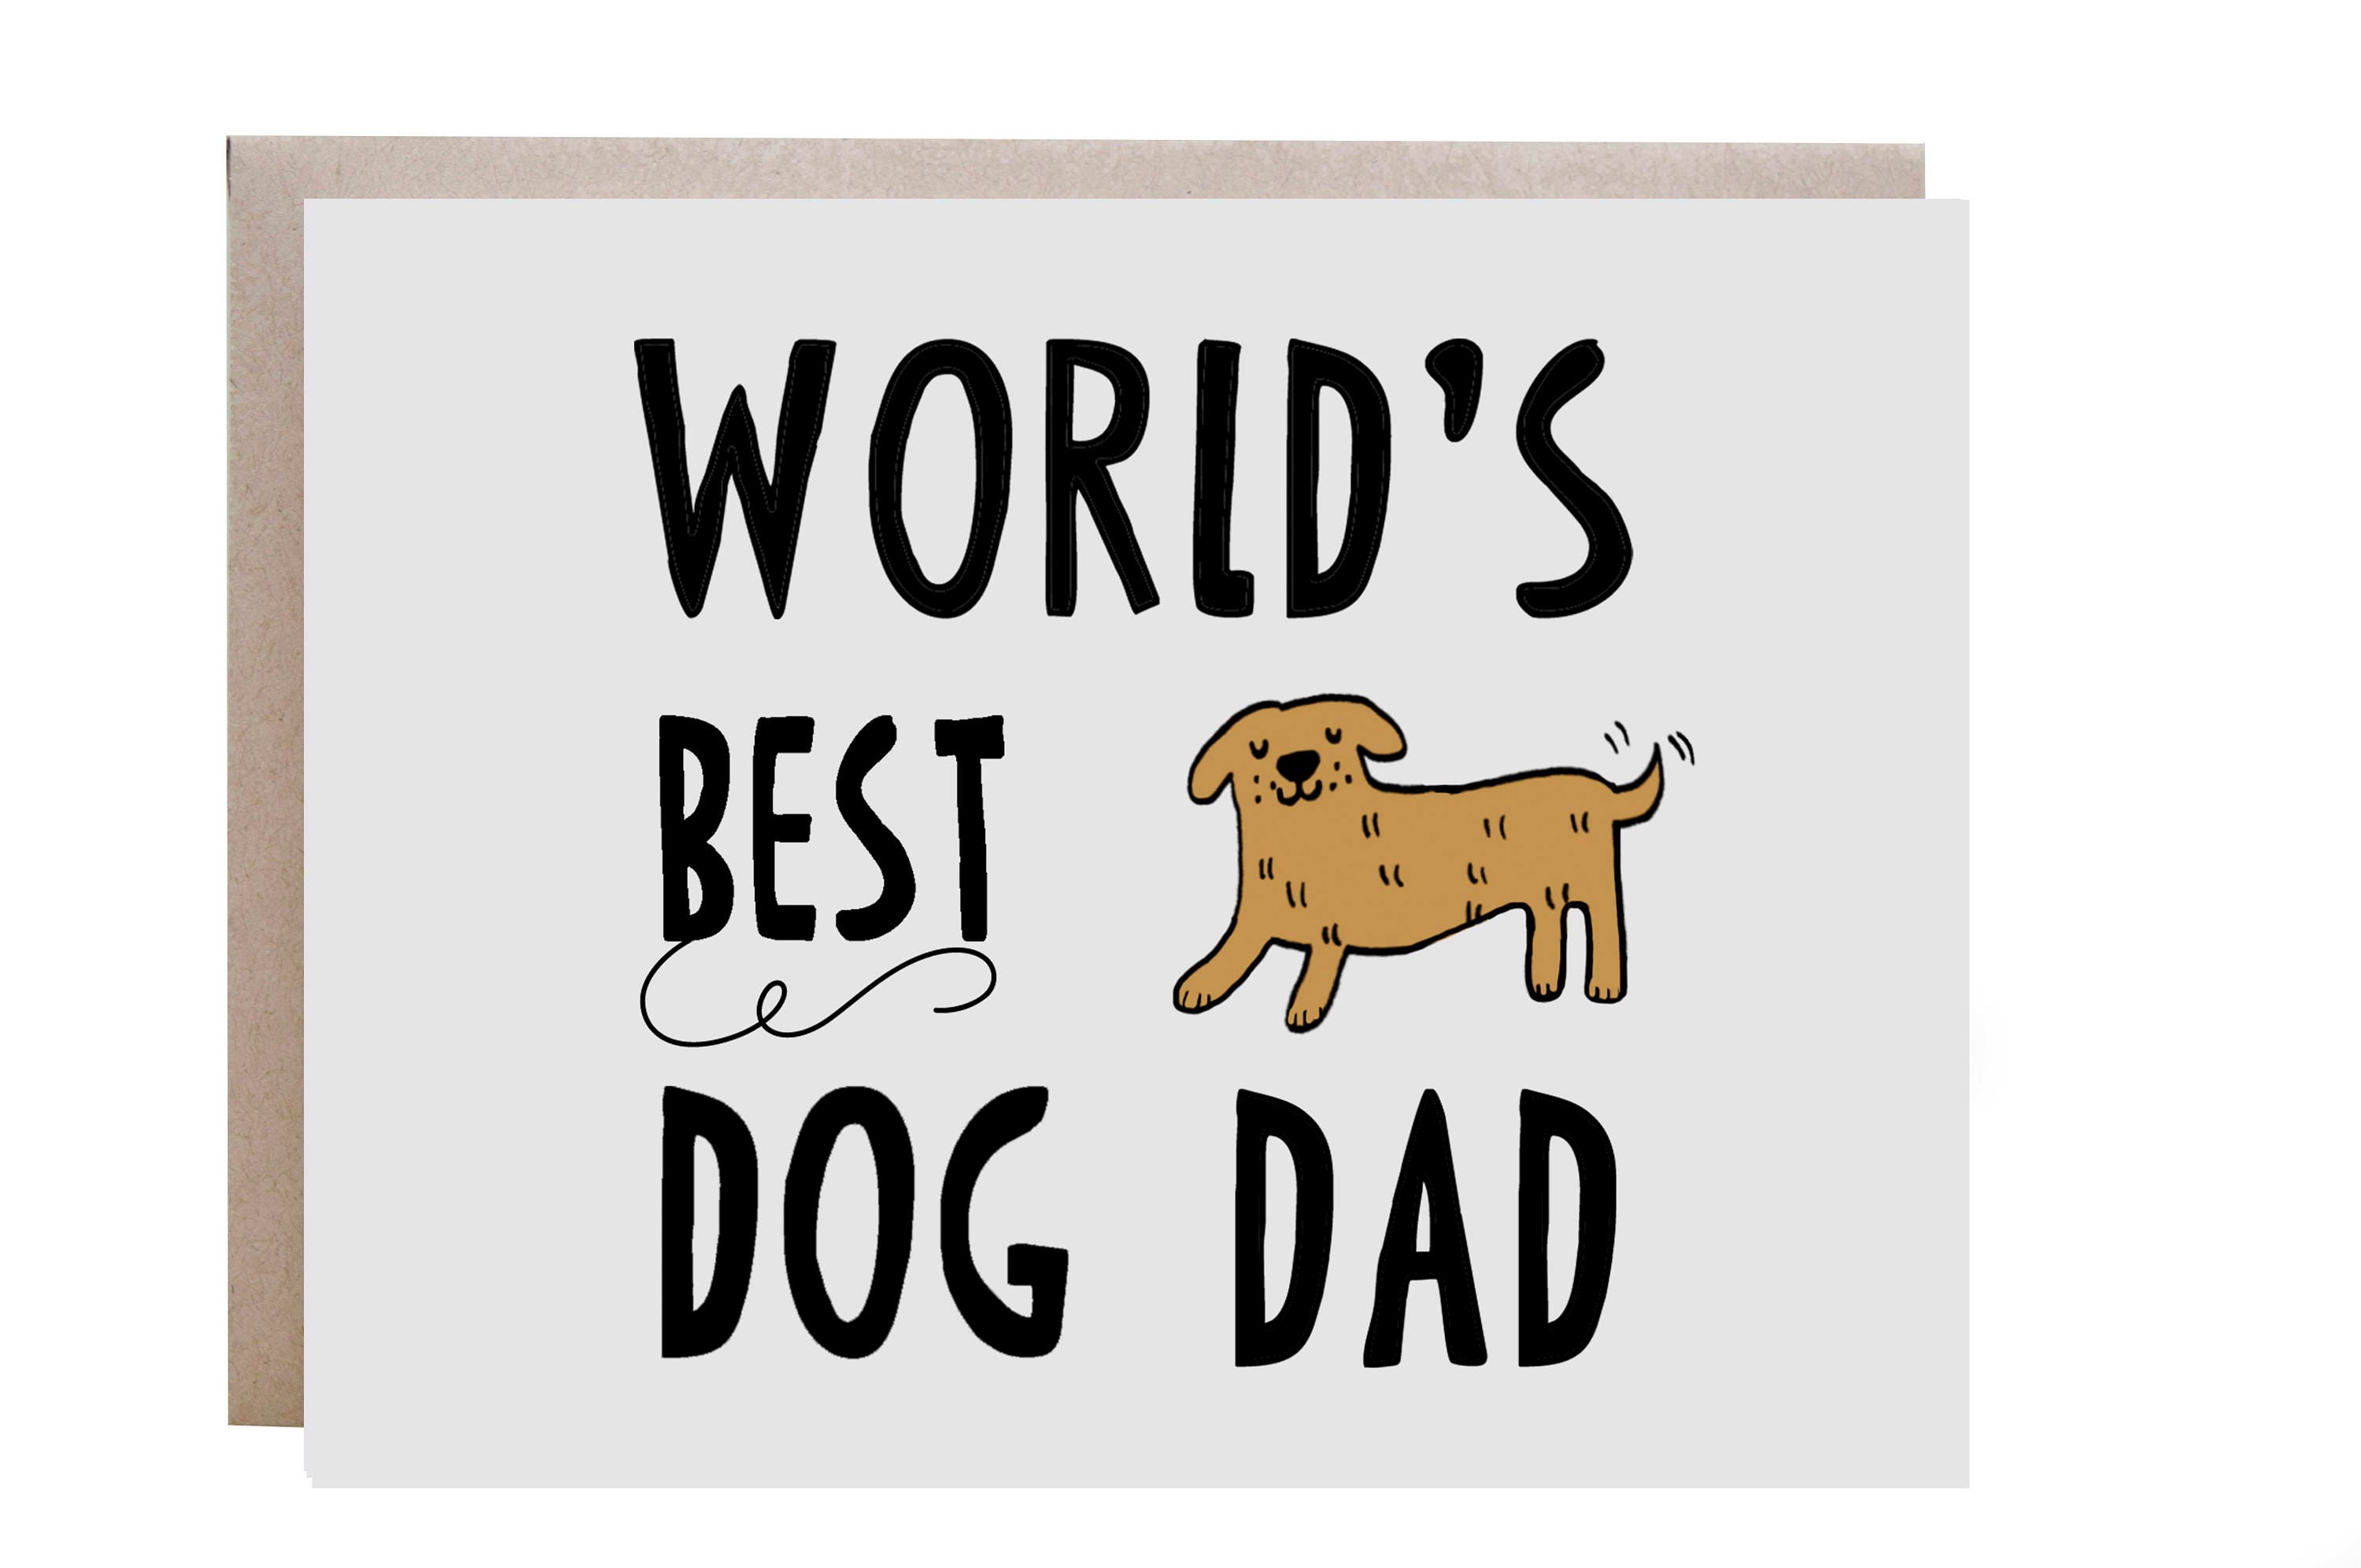 Dada Dog. Mrs. doggie Daddy. Card for doggy.